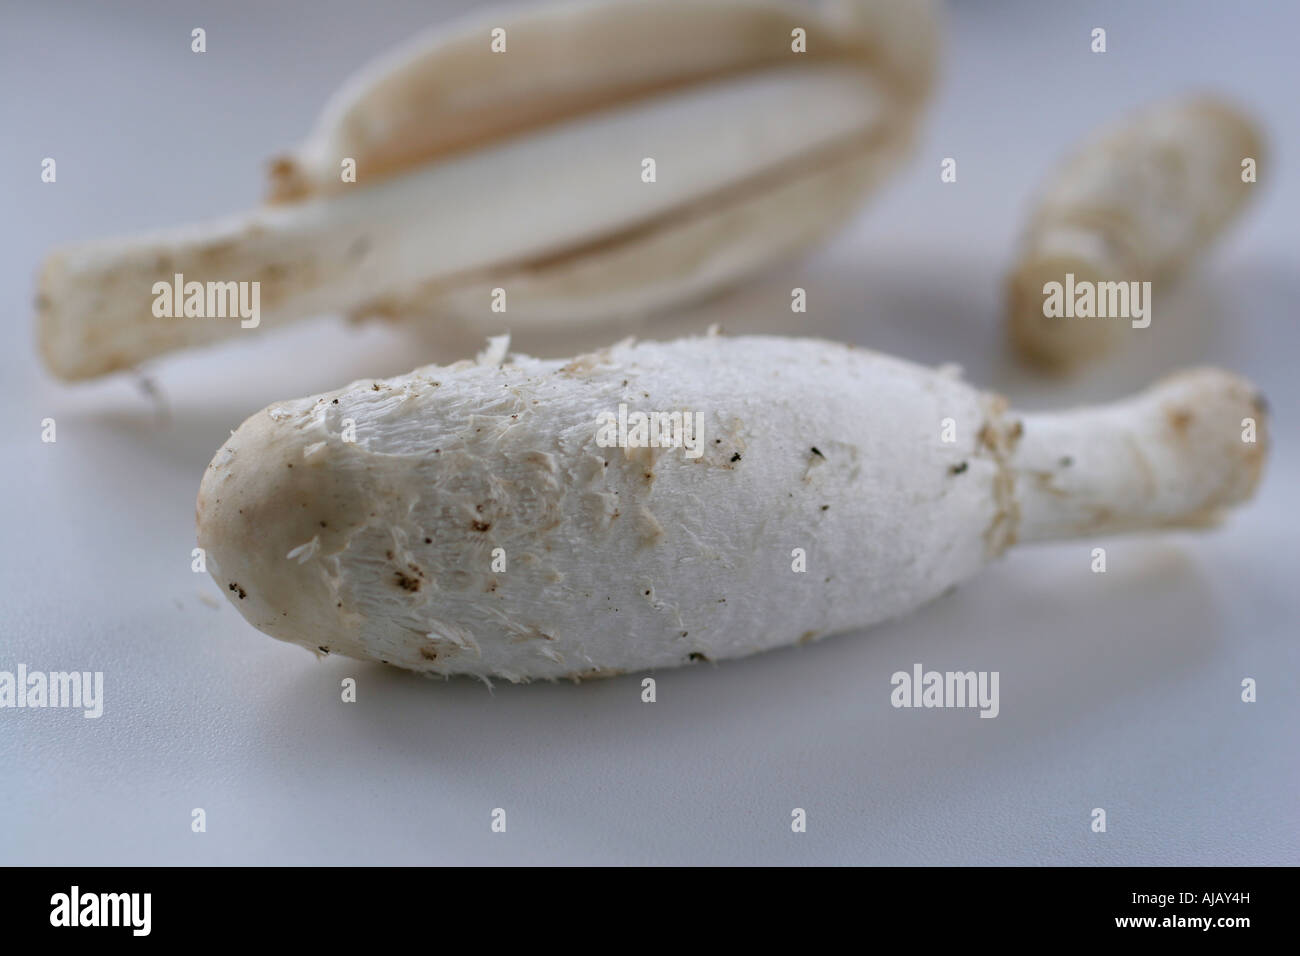 Shaggy mane mushroom en blanco placa de corte Foto de stock